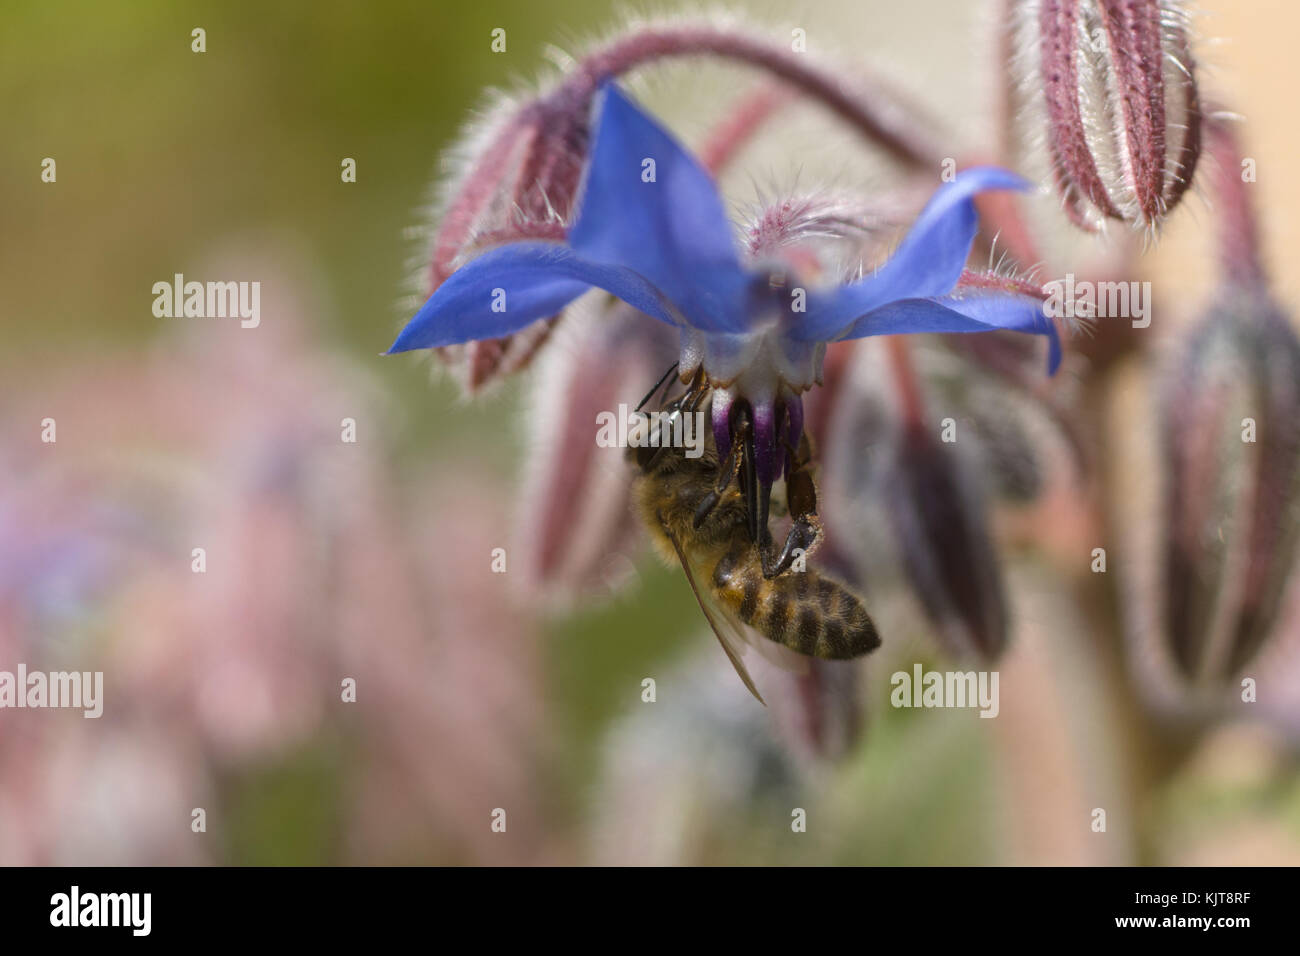 Honey bee on borage flower Stock Photo